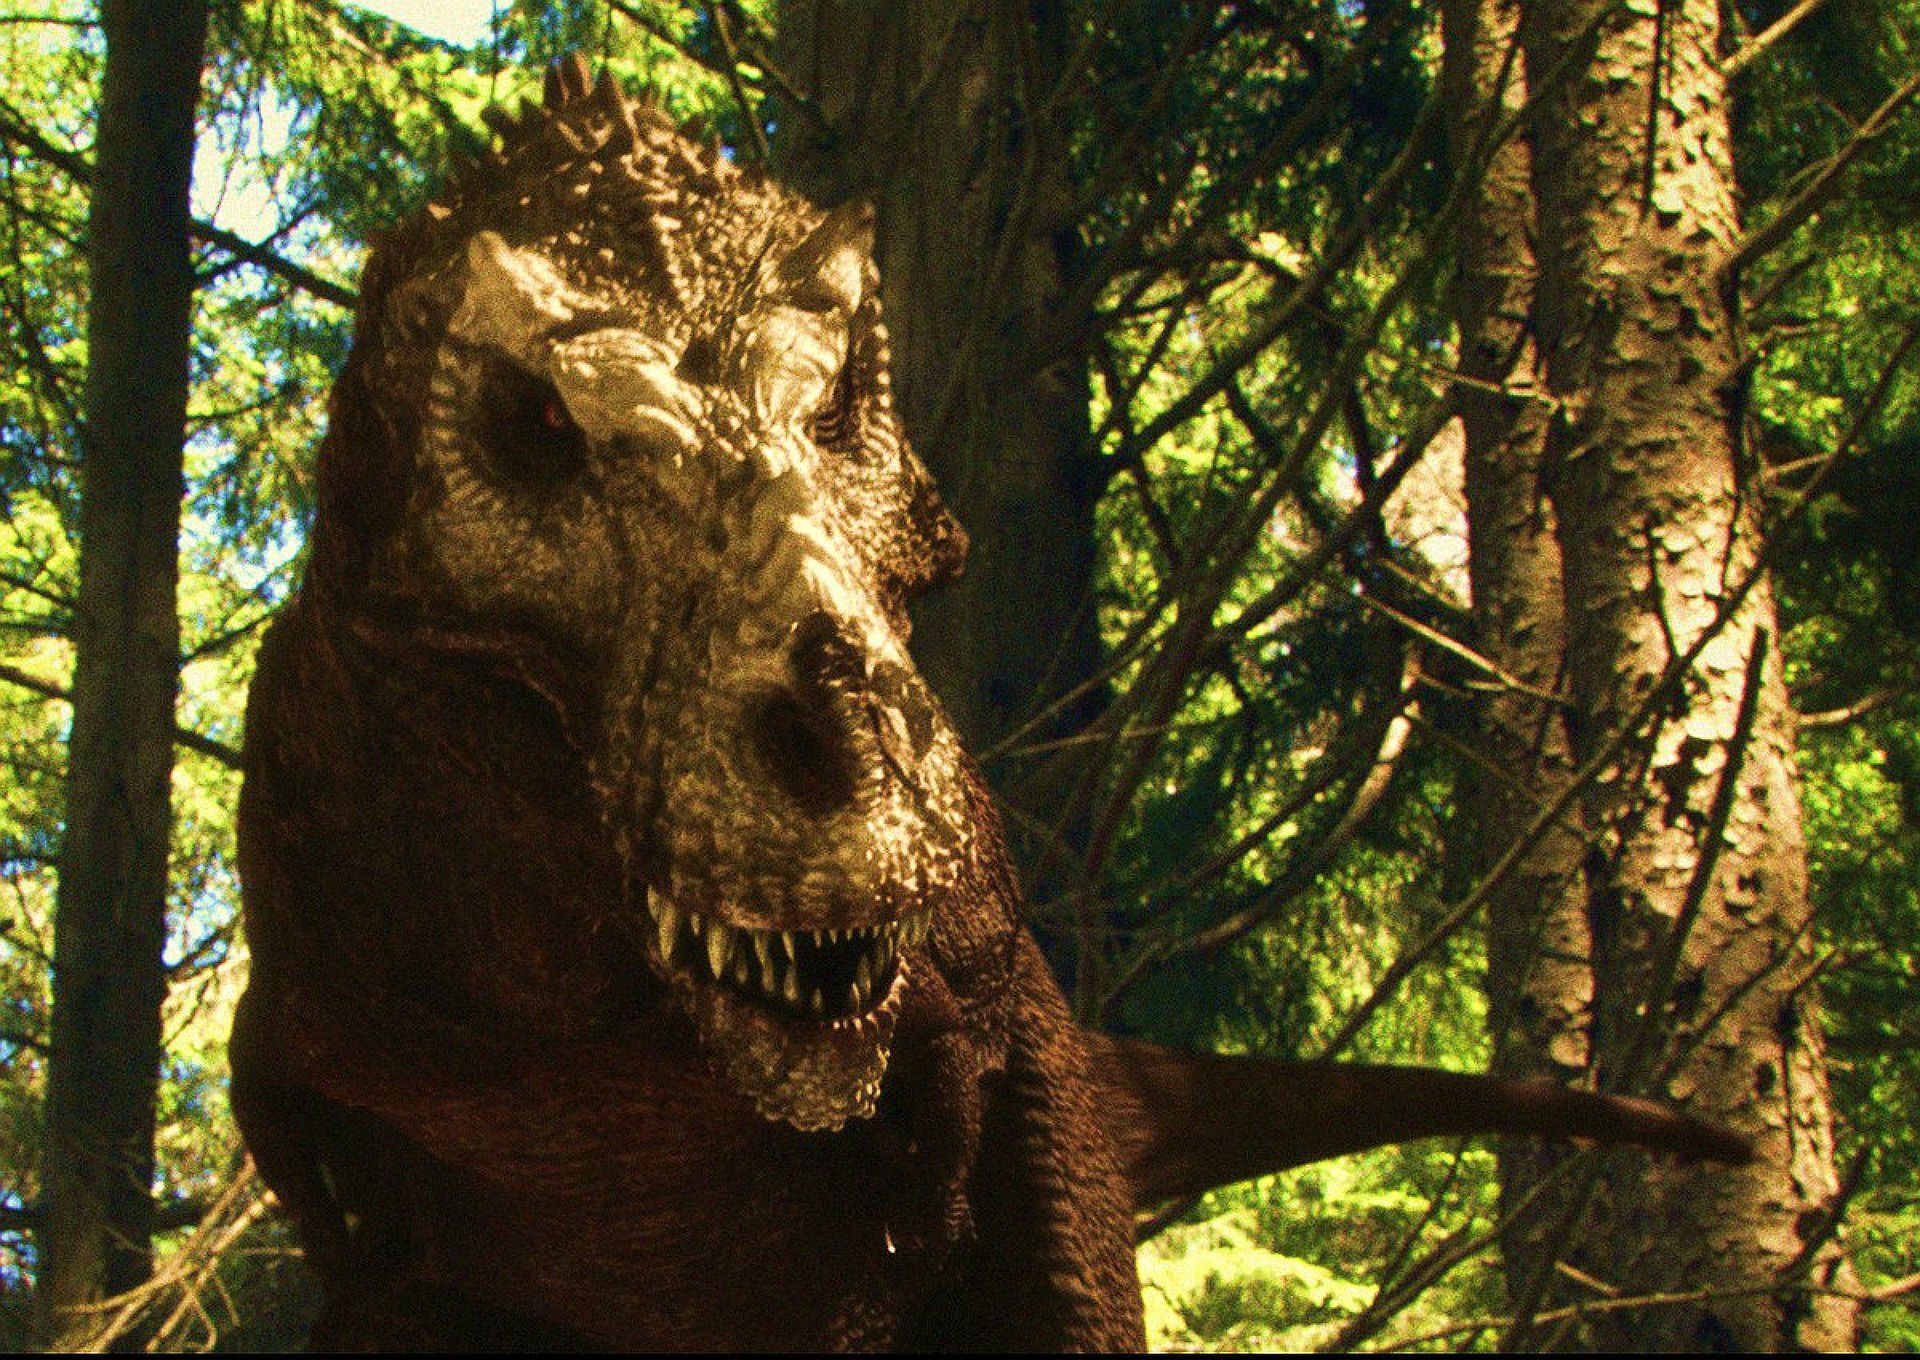 Descarga gratuita de fondo de pantalla para móvil de Películas, Jurassic World.